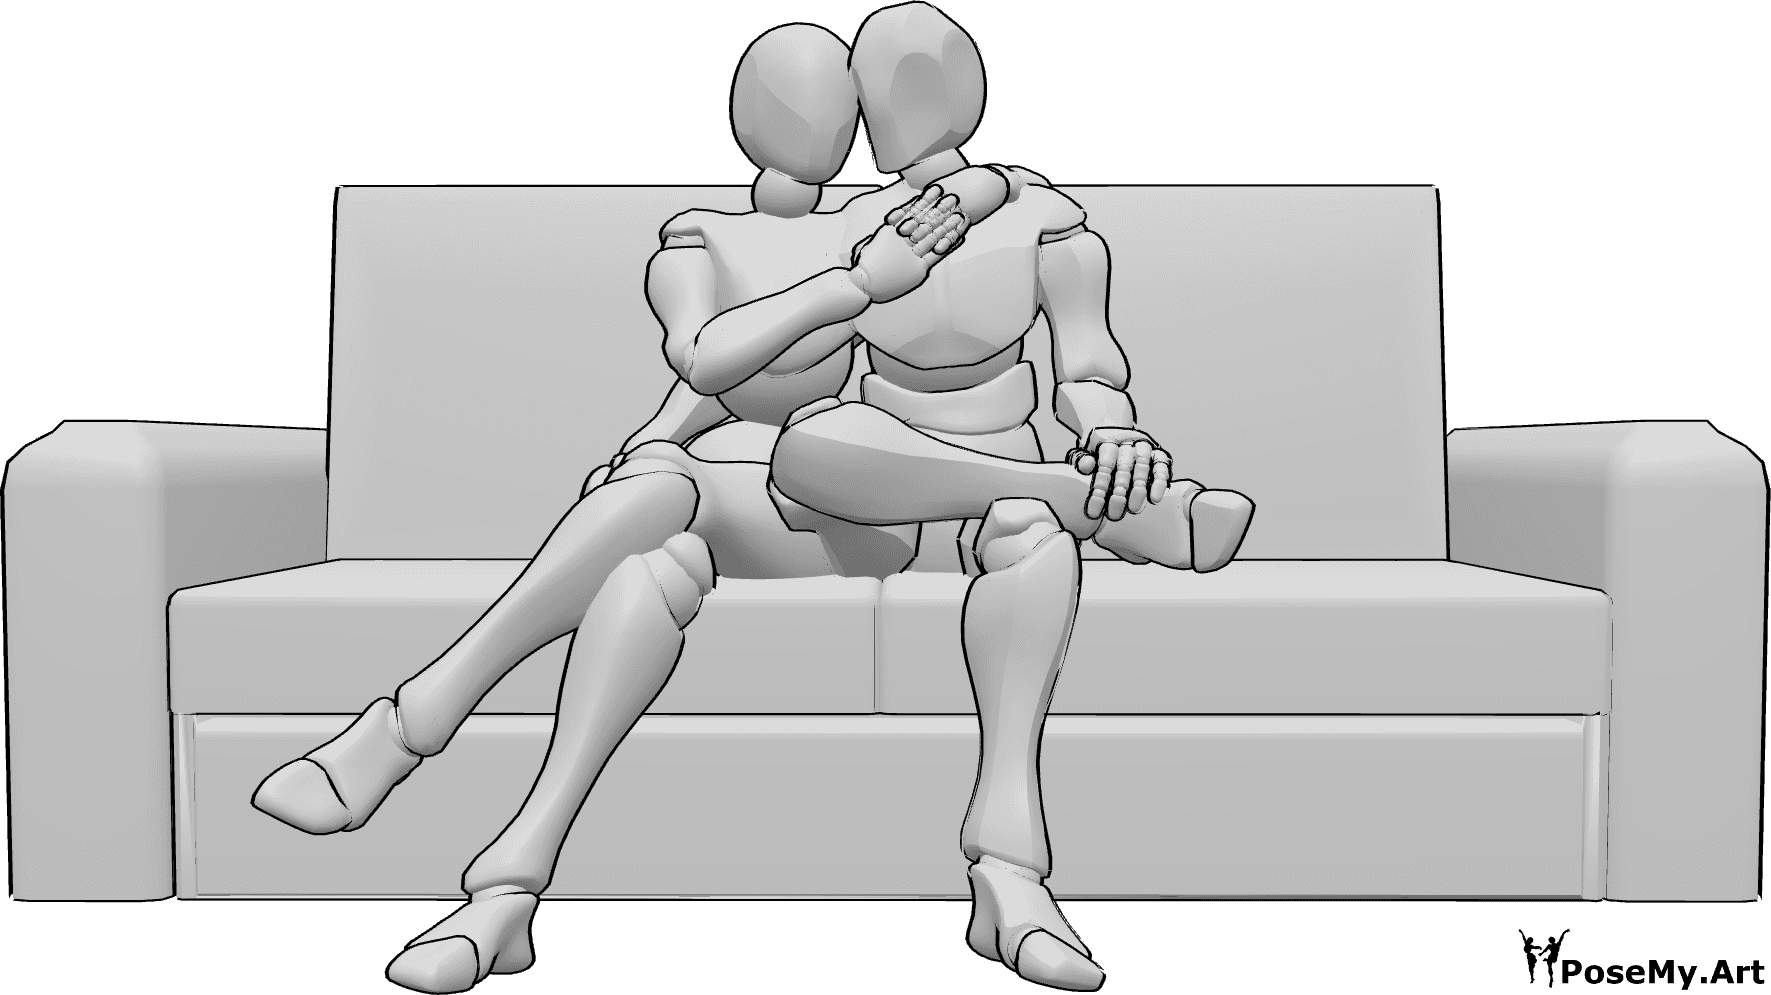 Referência de poses- Pose de sofá sentado a acariciar - A mulher e o homem estão sentados no sofá a acariciar-se e a abraçar-se